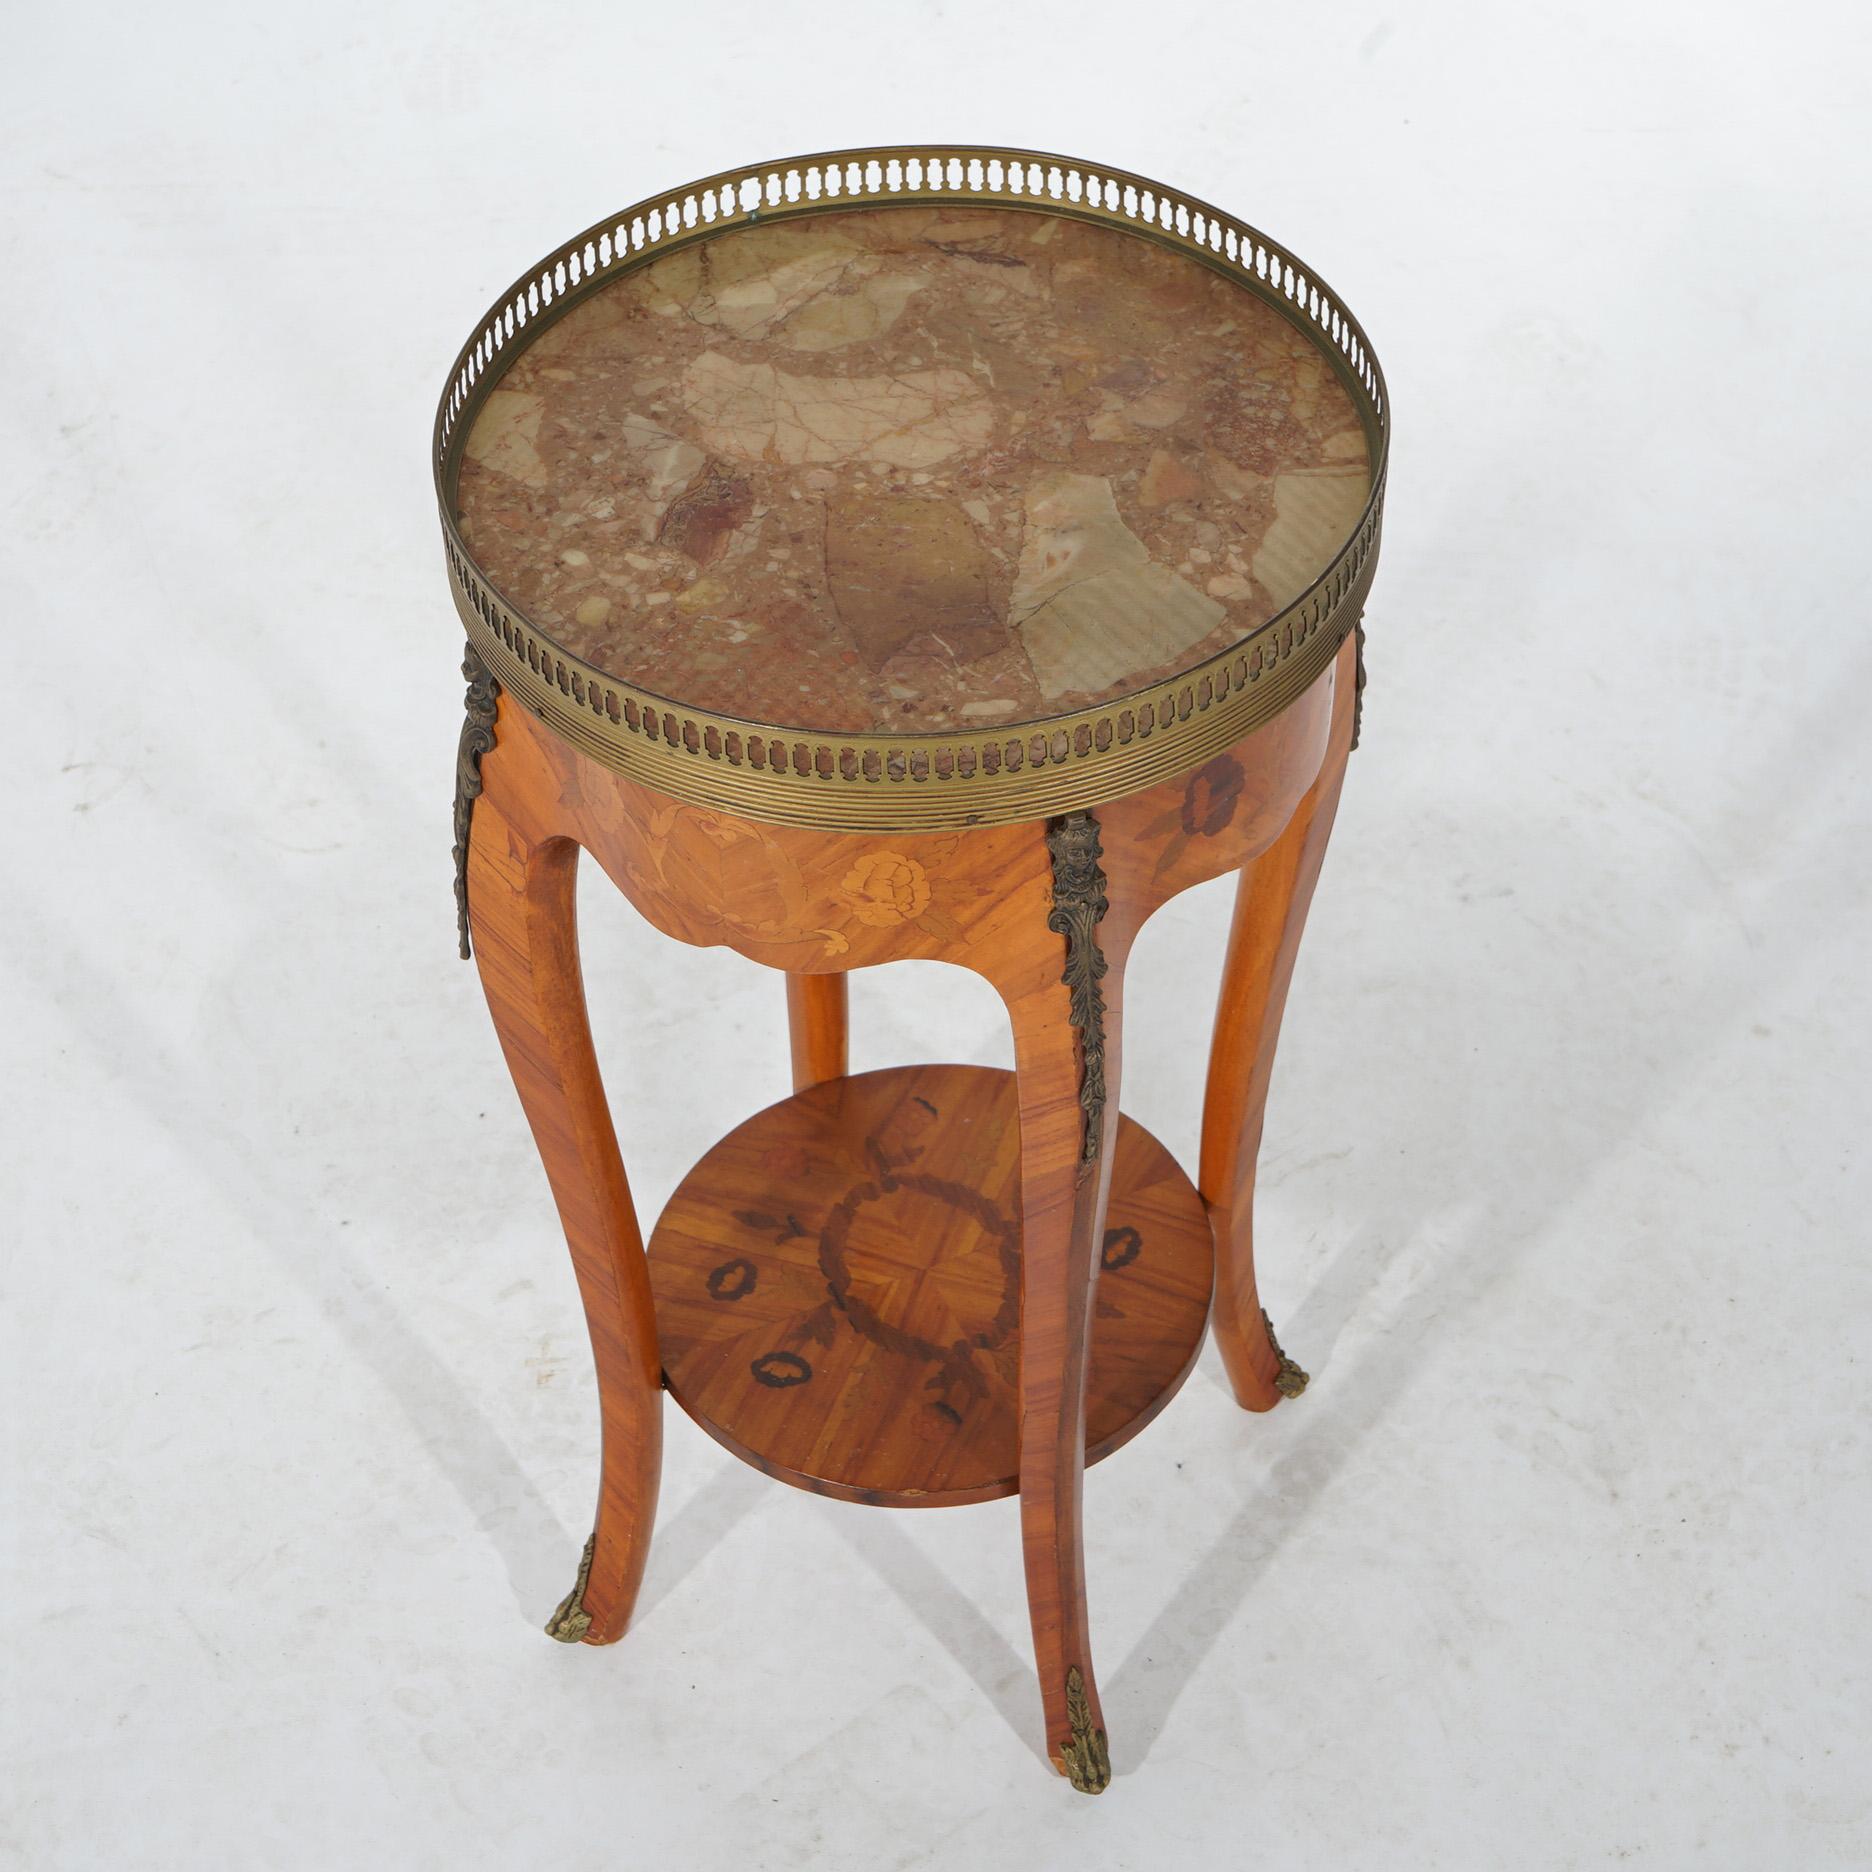 Table à plateau en satin de bois, marqueterie et marbre rouge de style Louis XVI, à galerie percée et pieds cabriole, c1930

Dimensions : 24''H x 14.25''W x 14.25''D